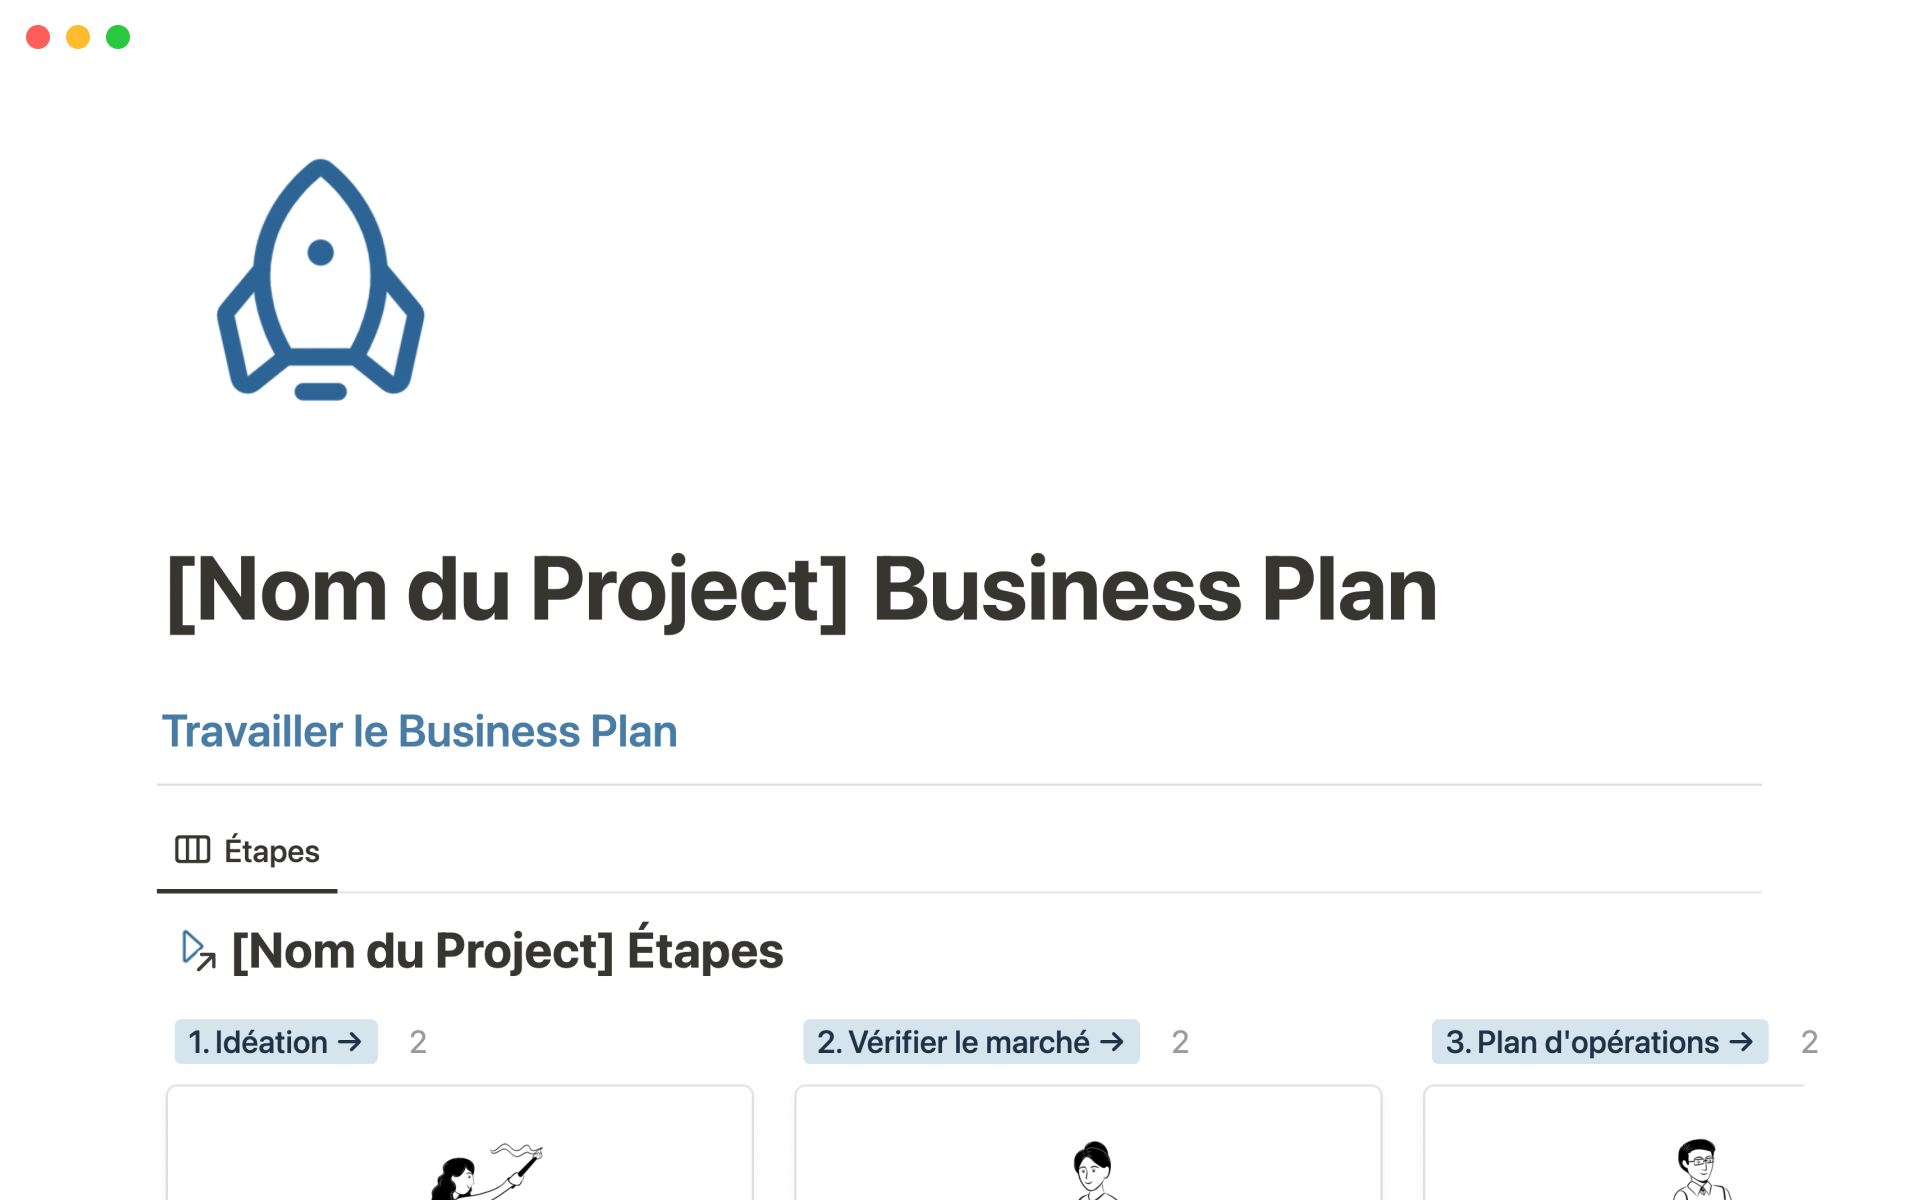 Le Business Plan [Modèle] en Notion est un espace pour construire des Business Plans interactifs et partageables.